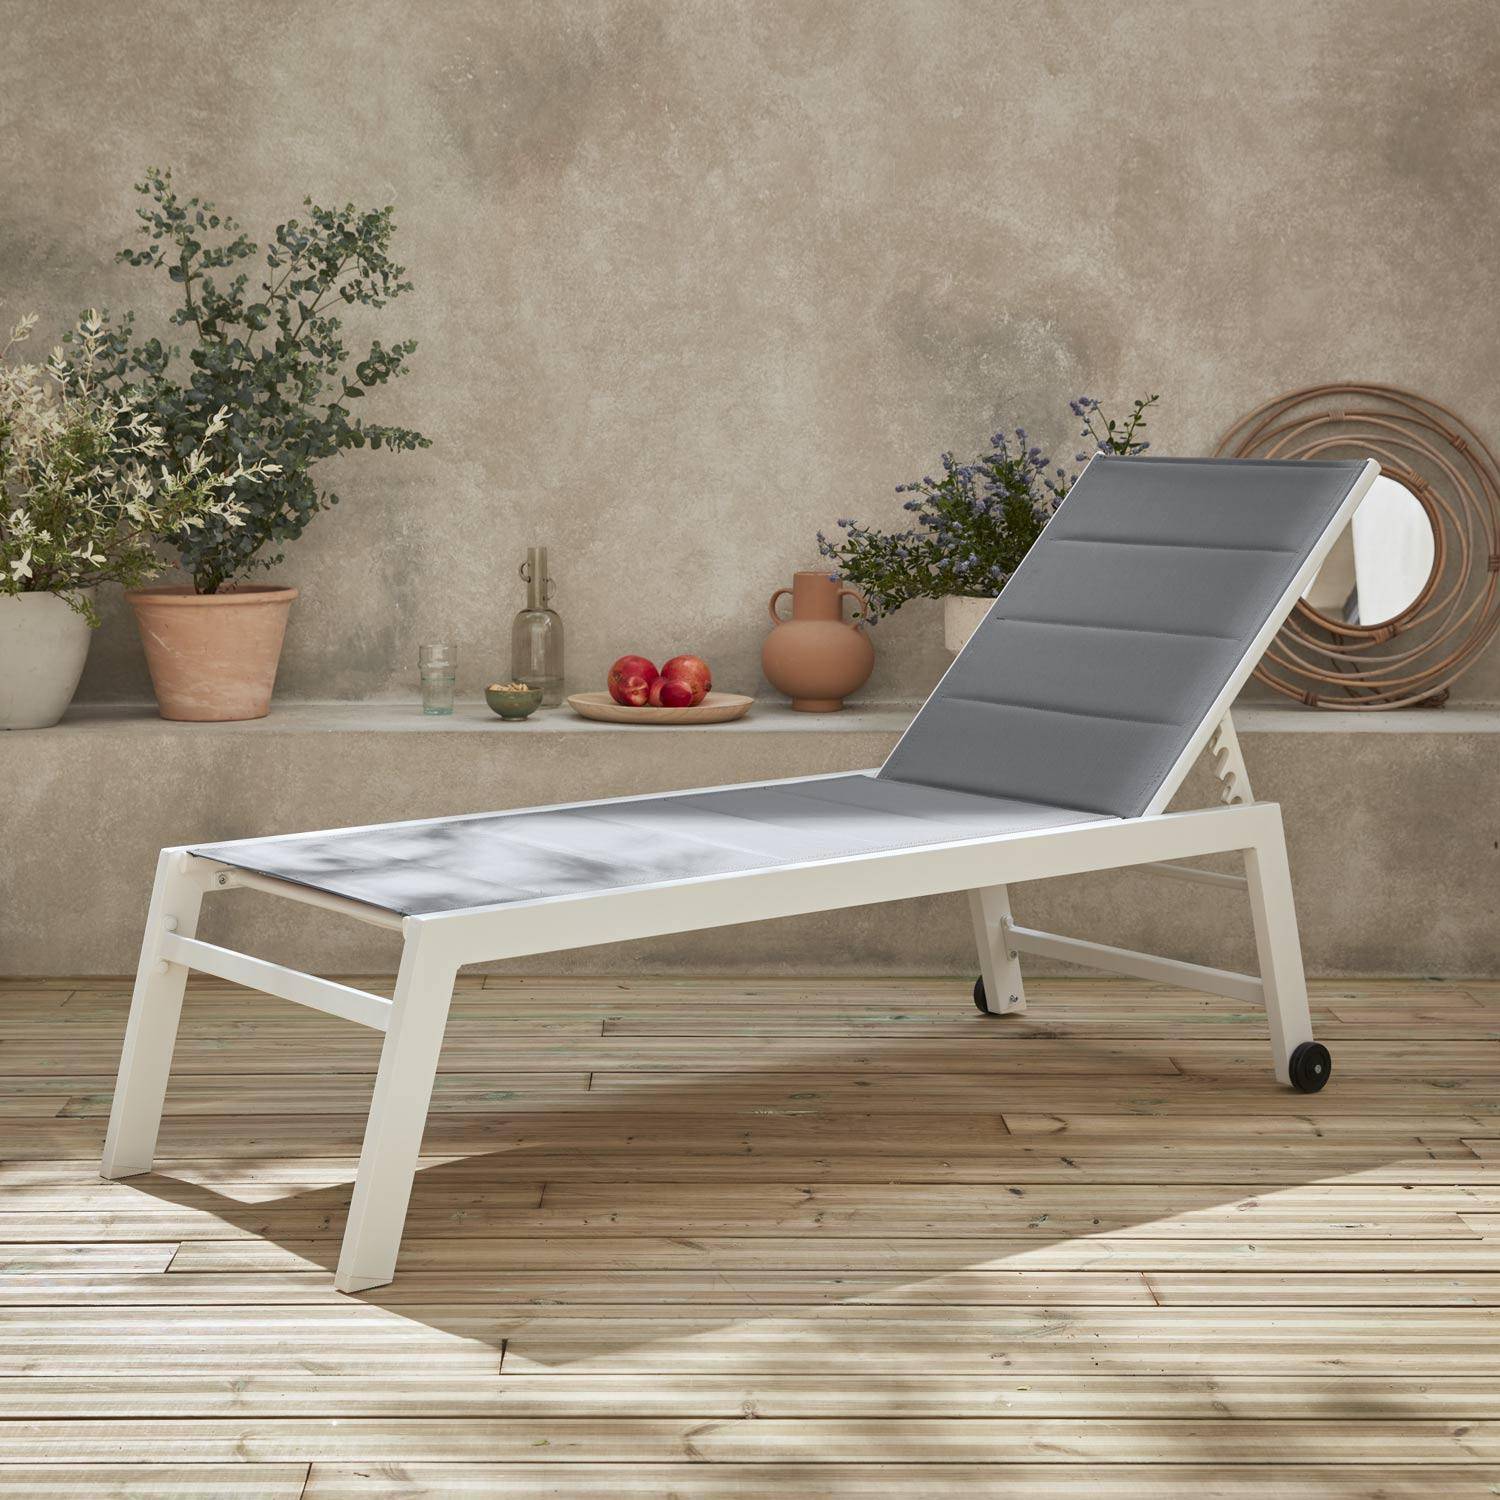 Sonnenliege - Solis - Liegestuhl aus gestepptem Textilene mit 6 Positionen, weißes Gestell, graues Textilene Photo1